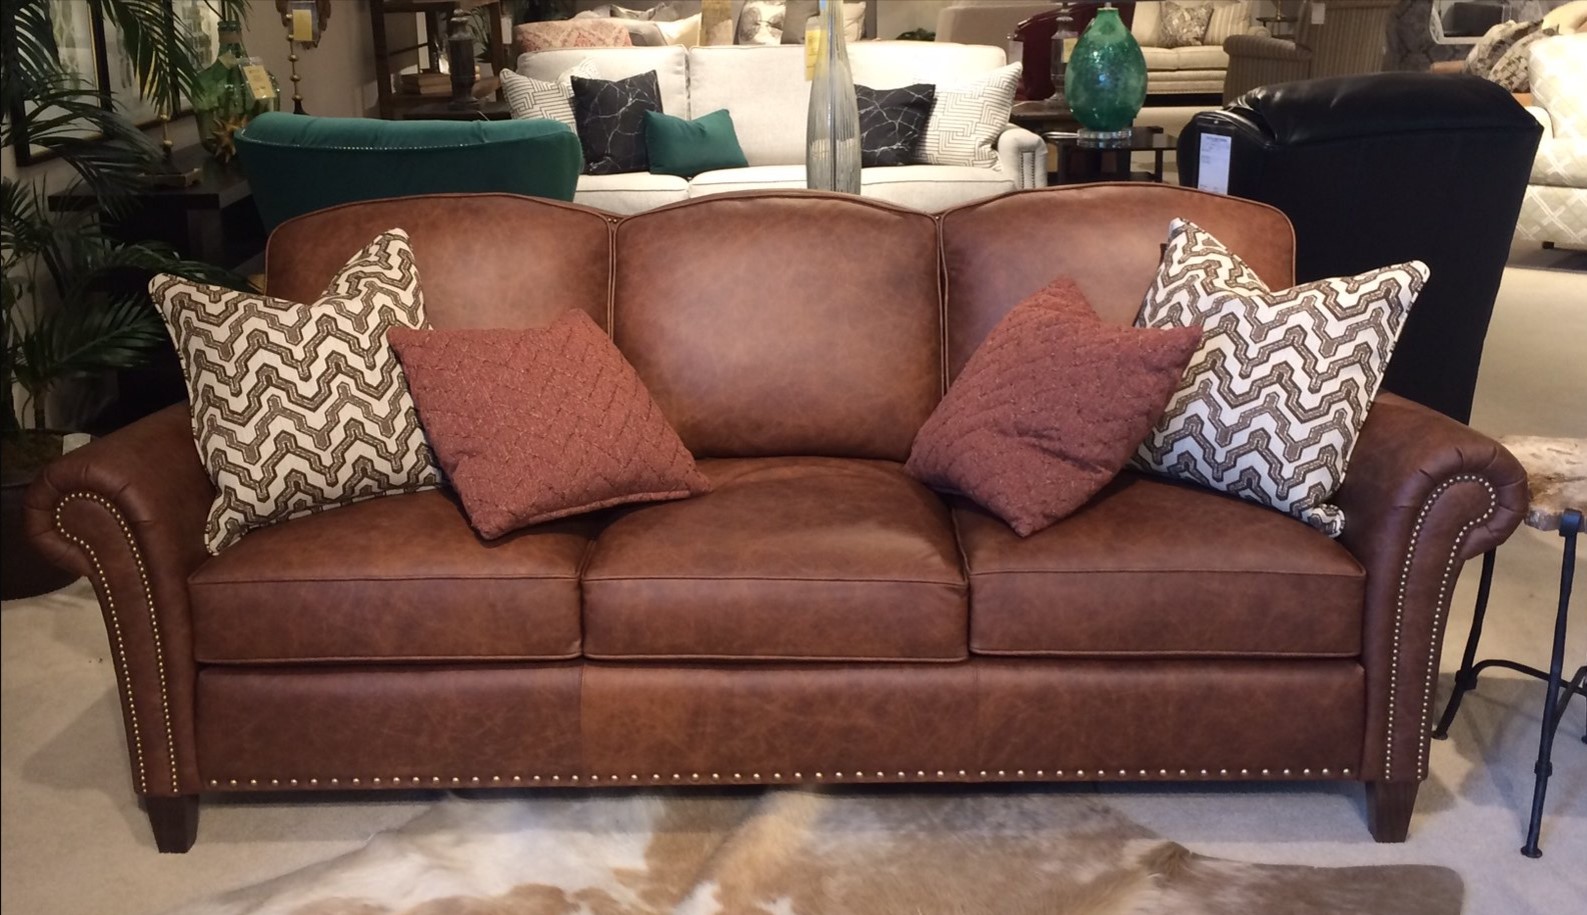 Кожаный диван с деревянным каркасом подойдет для классического интерьера гостиной